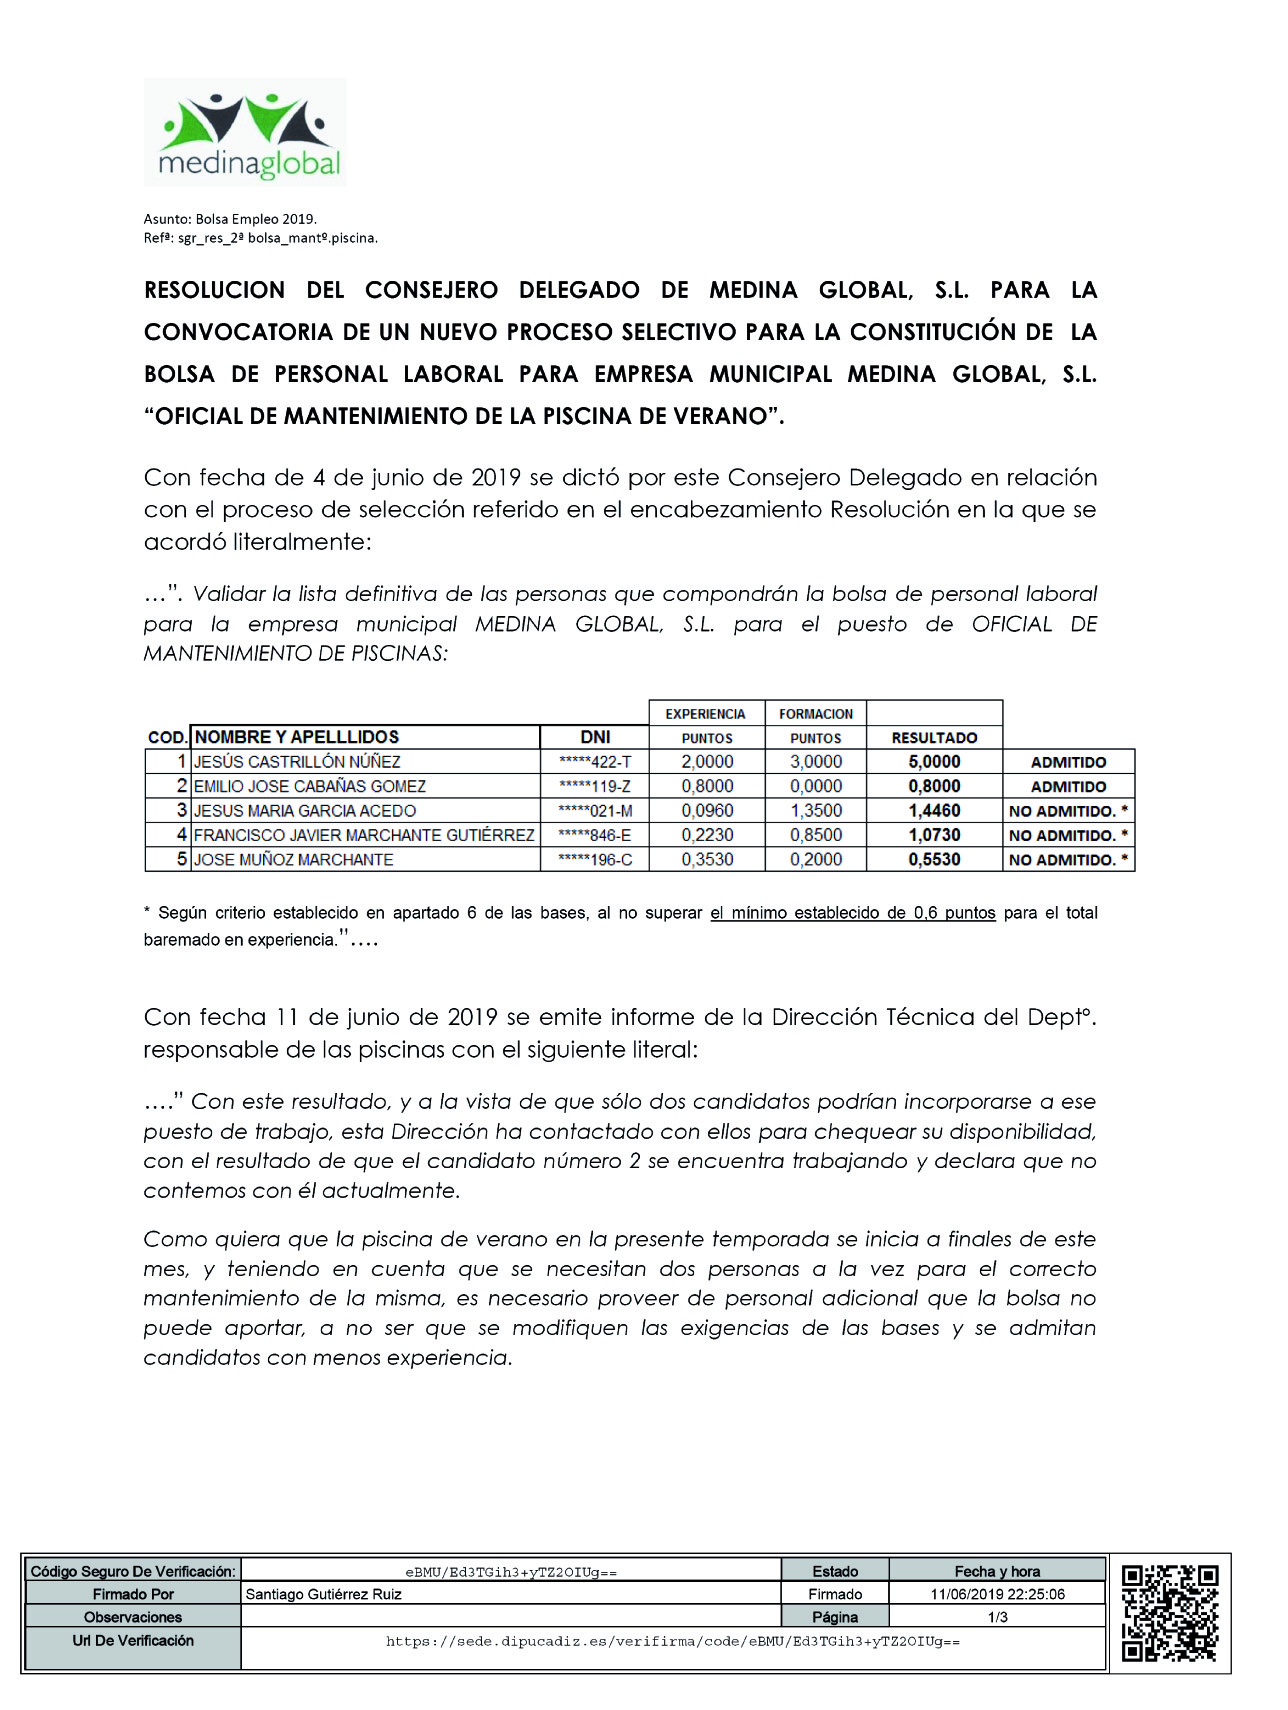 2ª CONVOCATORIA BOLSA DE PERSONAL LABORAL “OFICIAL DE MANTENIMIENTO DE LA PISCINA DE VERANO